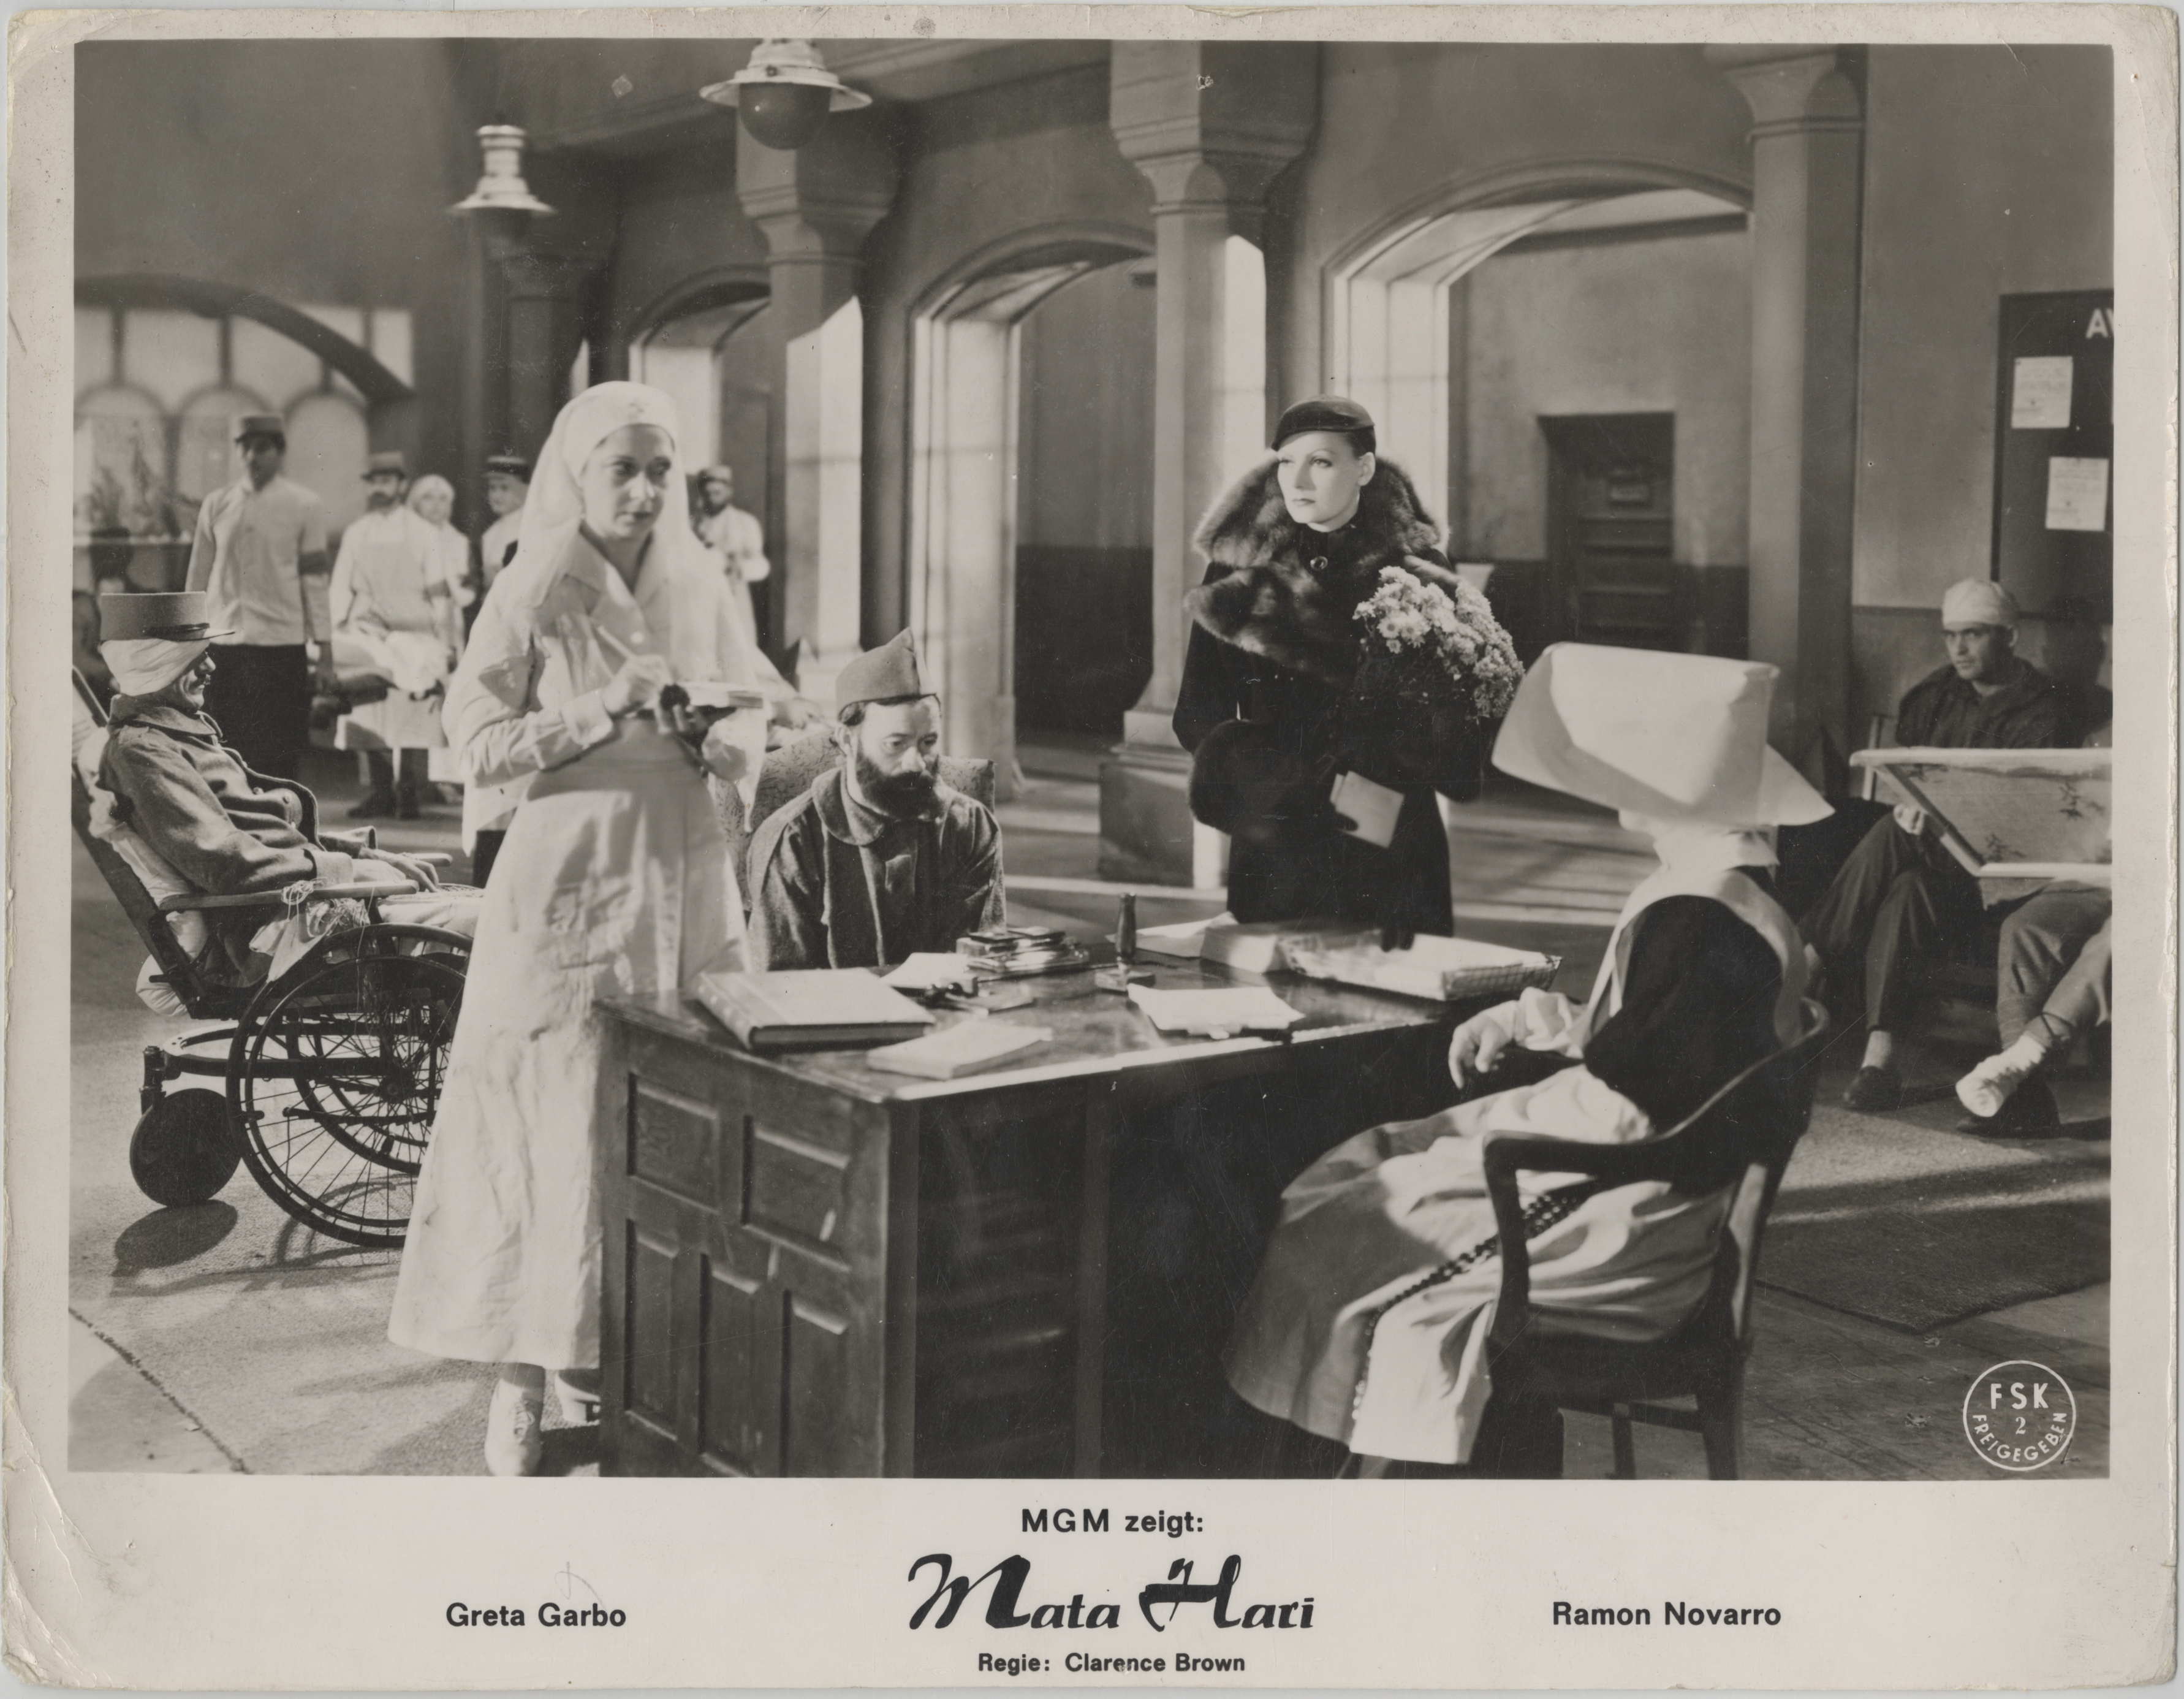 Scene from movie “Mata Hari